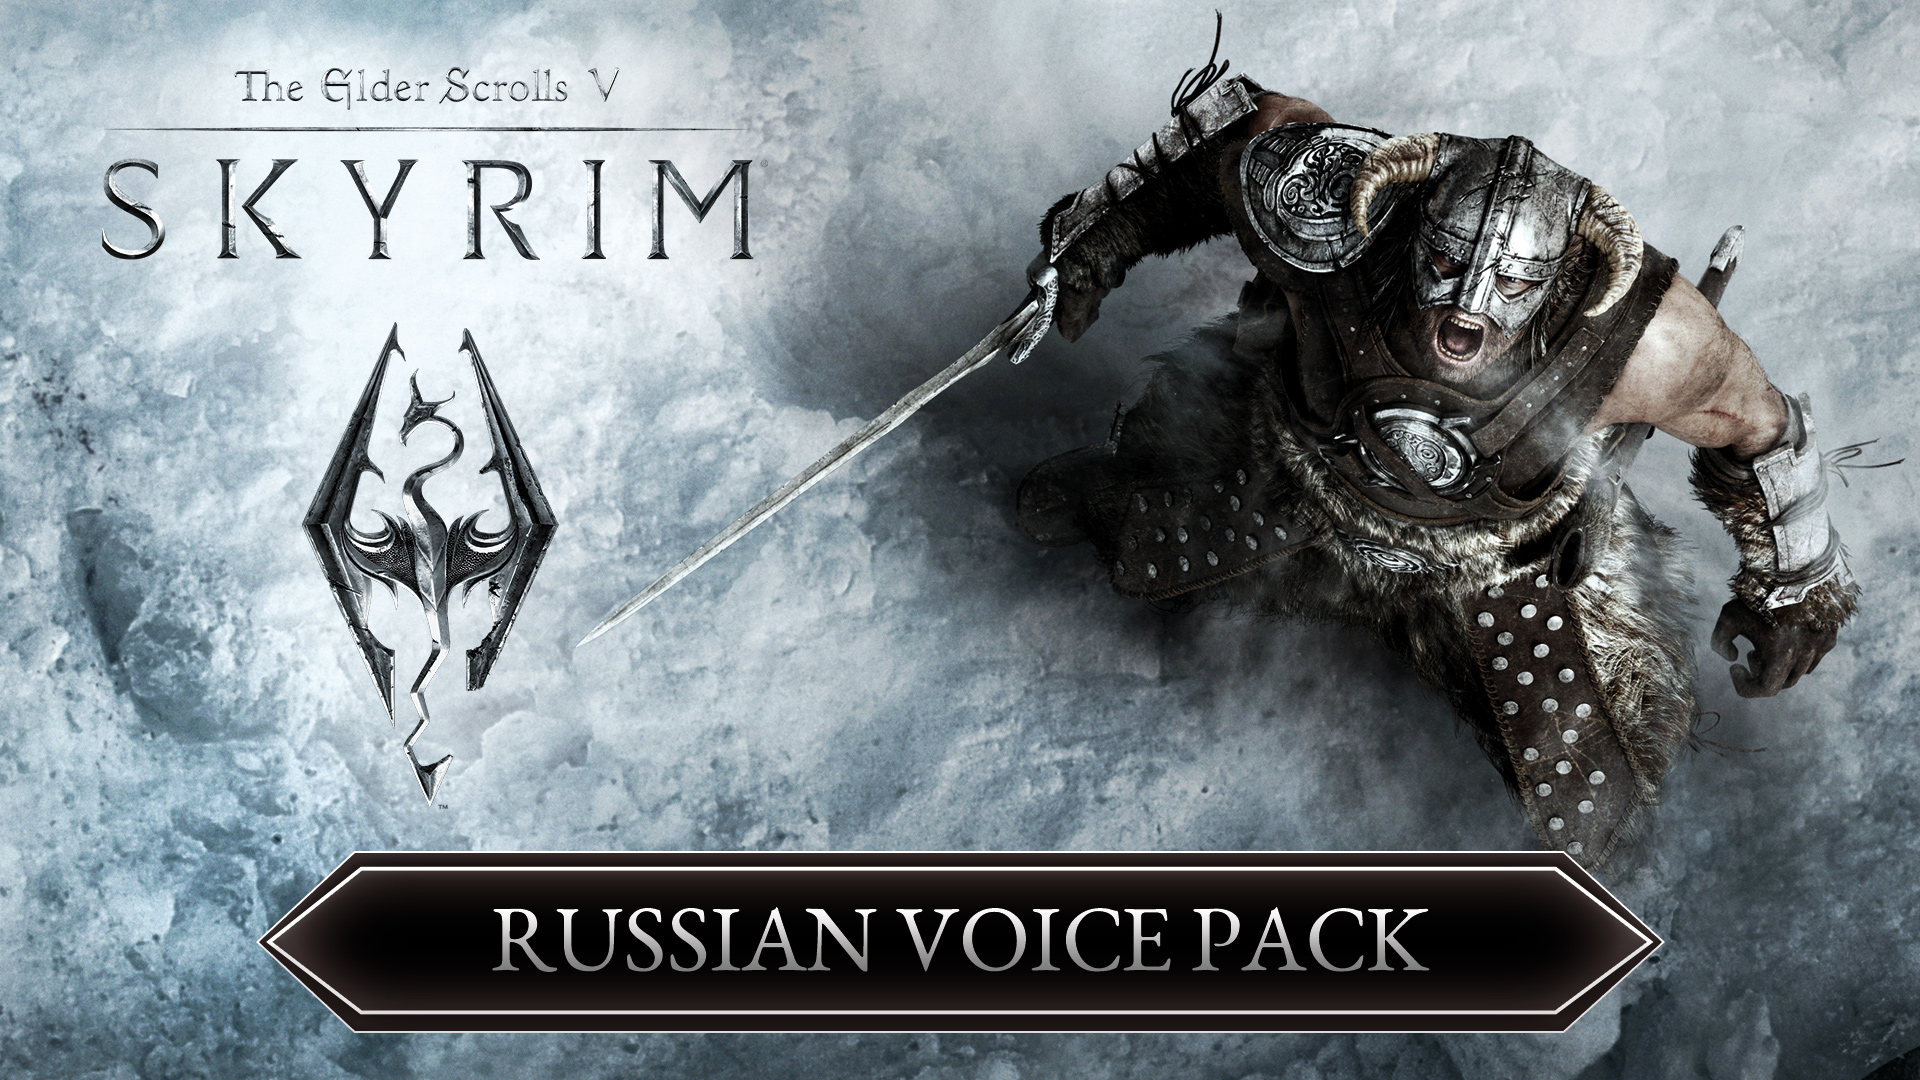 The Elder Scrolls V: Skyrim Russian Voice Pack